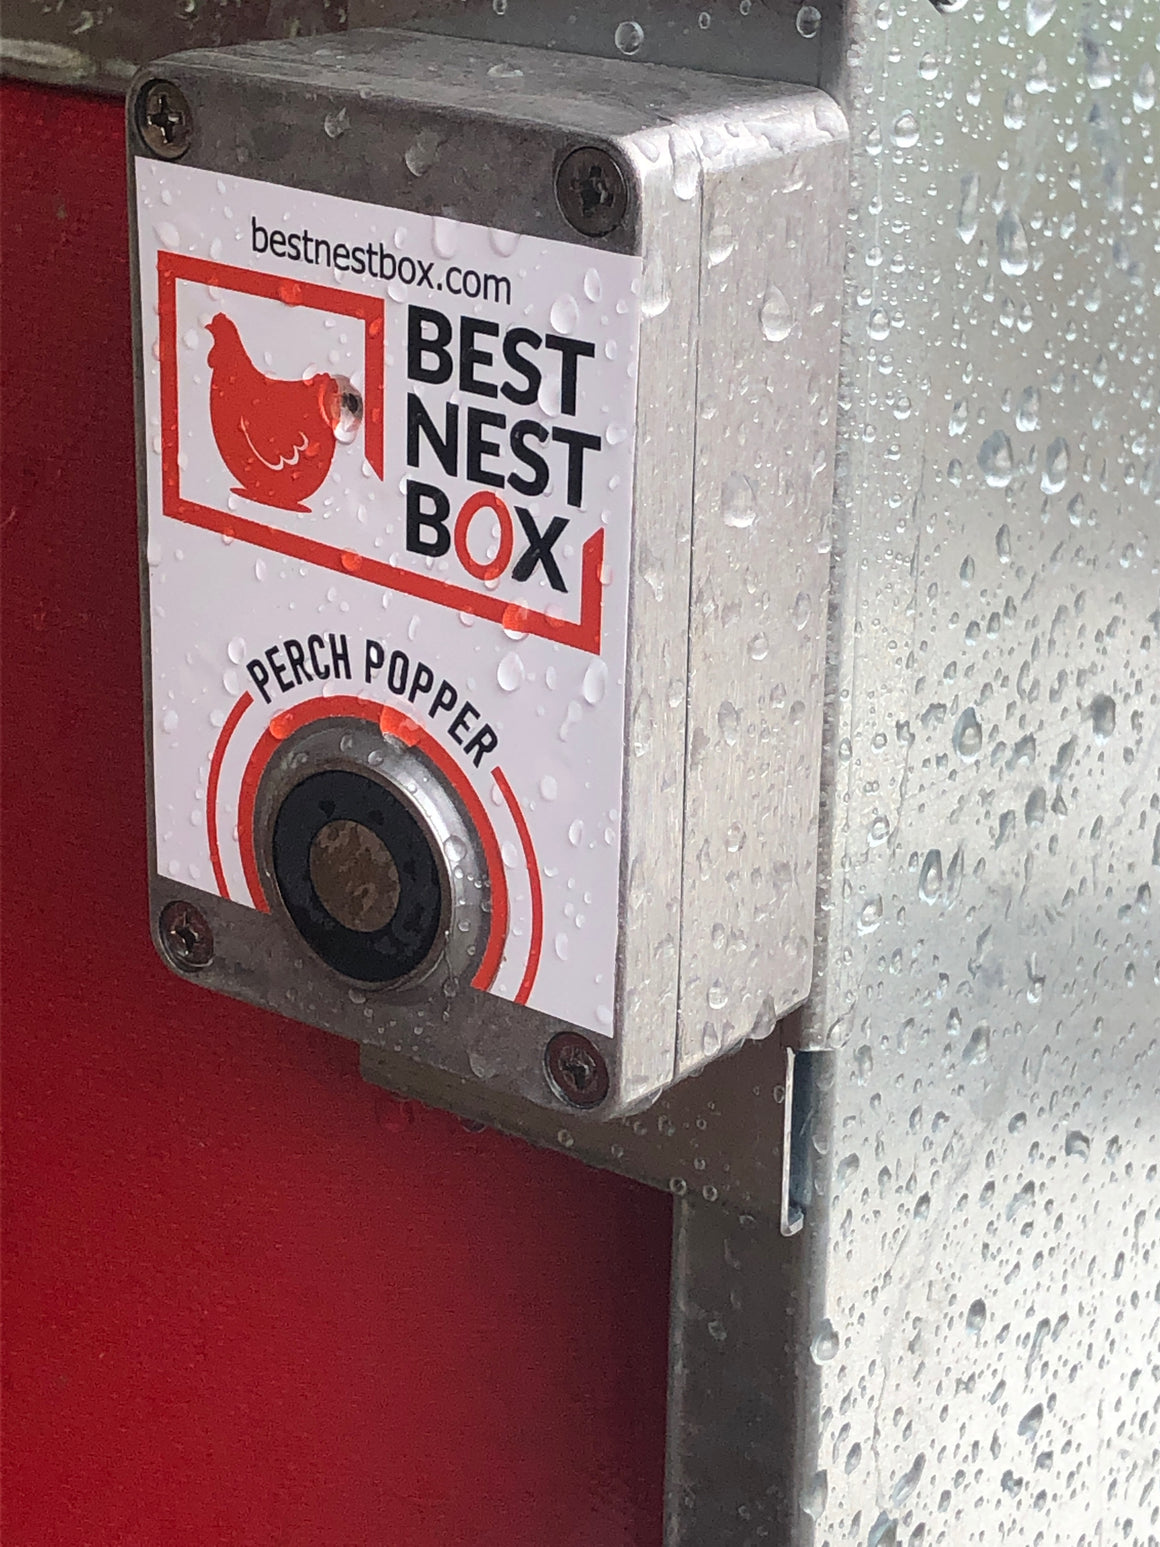 The Original PerchPopper - Auto nest box opener